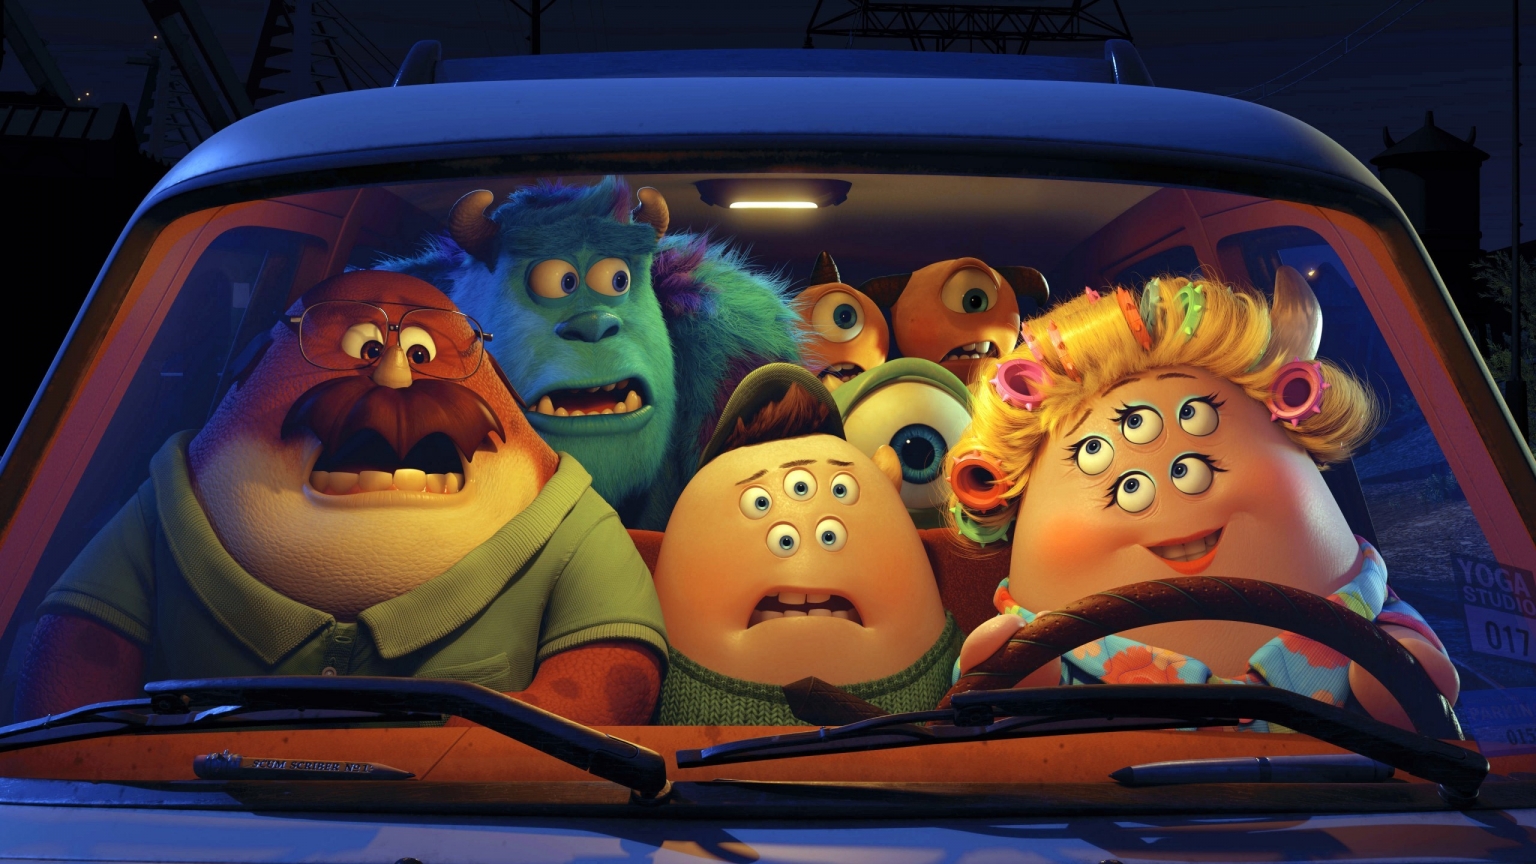 Pixar Monsters University Film for 1536 x 864 HDTV resolution